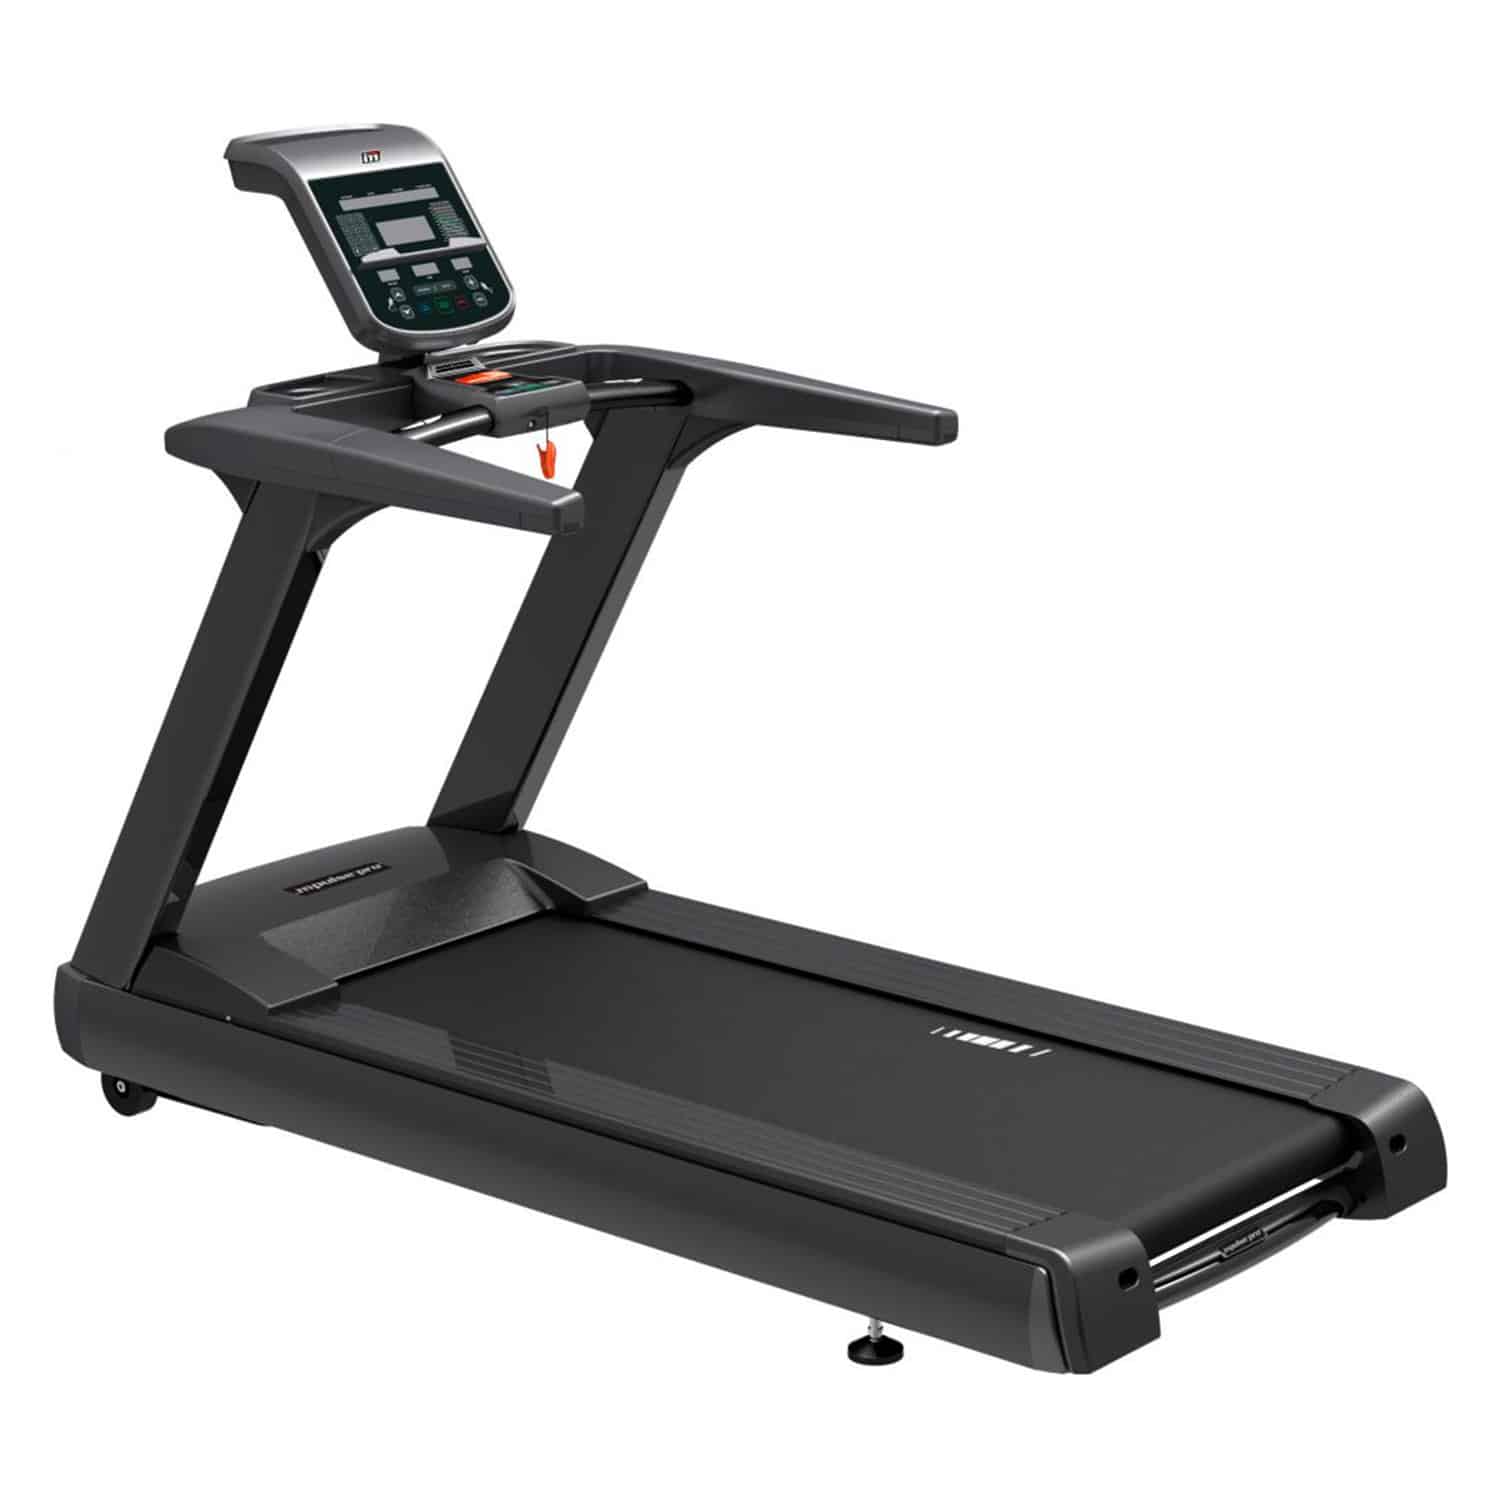 Impulse Fitness 3hp Ac Motor Commercial Treadmill RT500